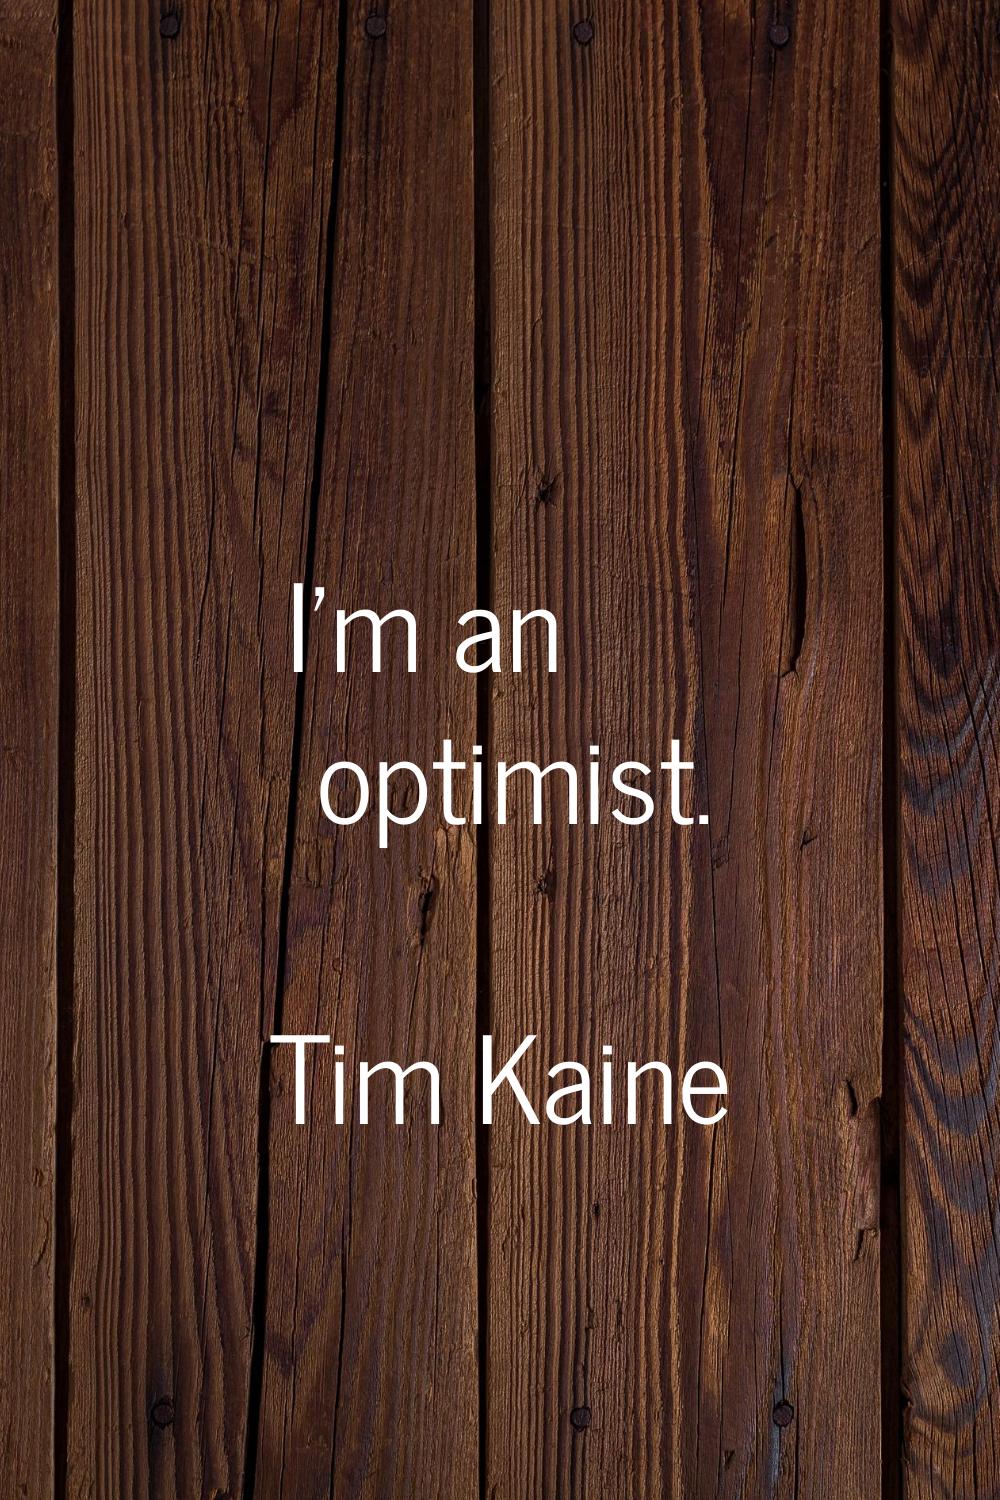 I'm an optimist.